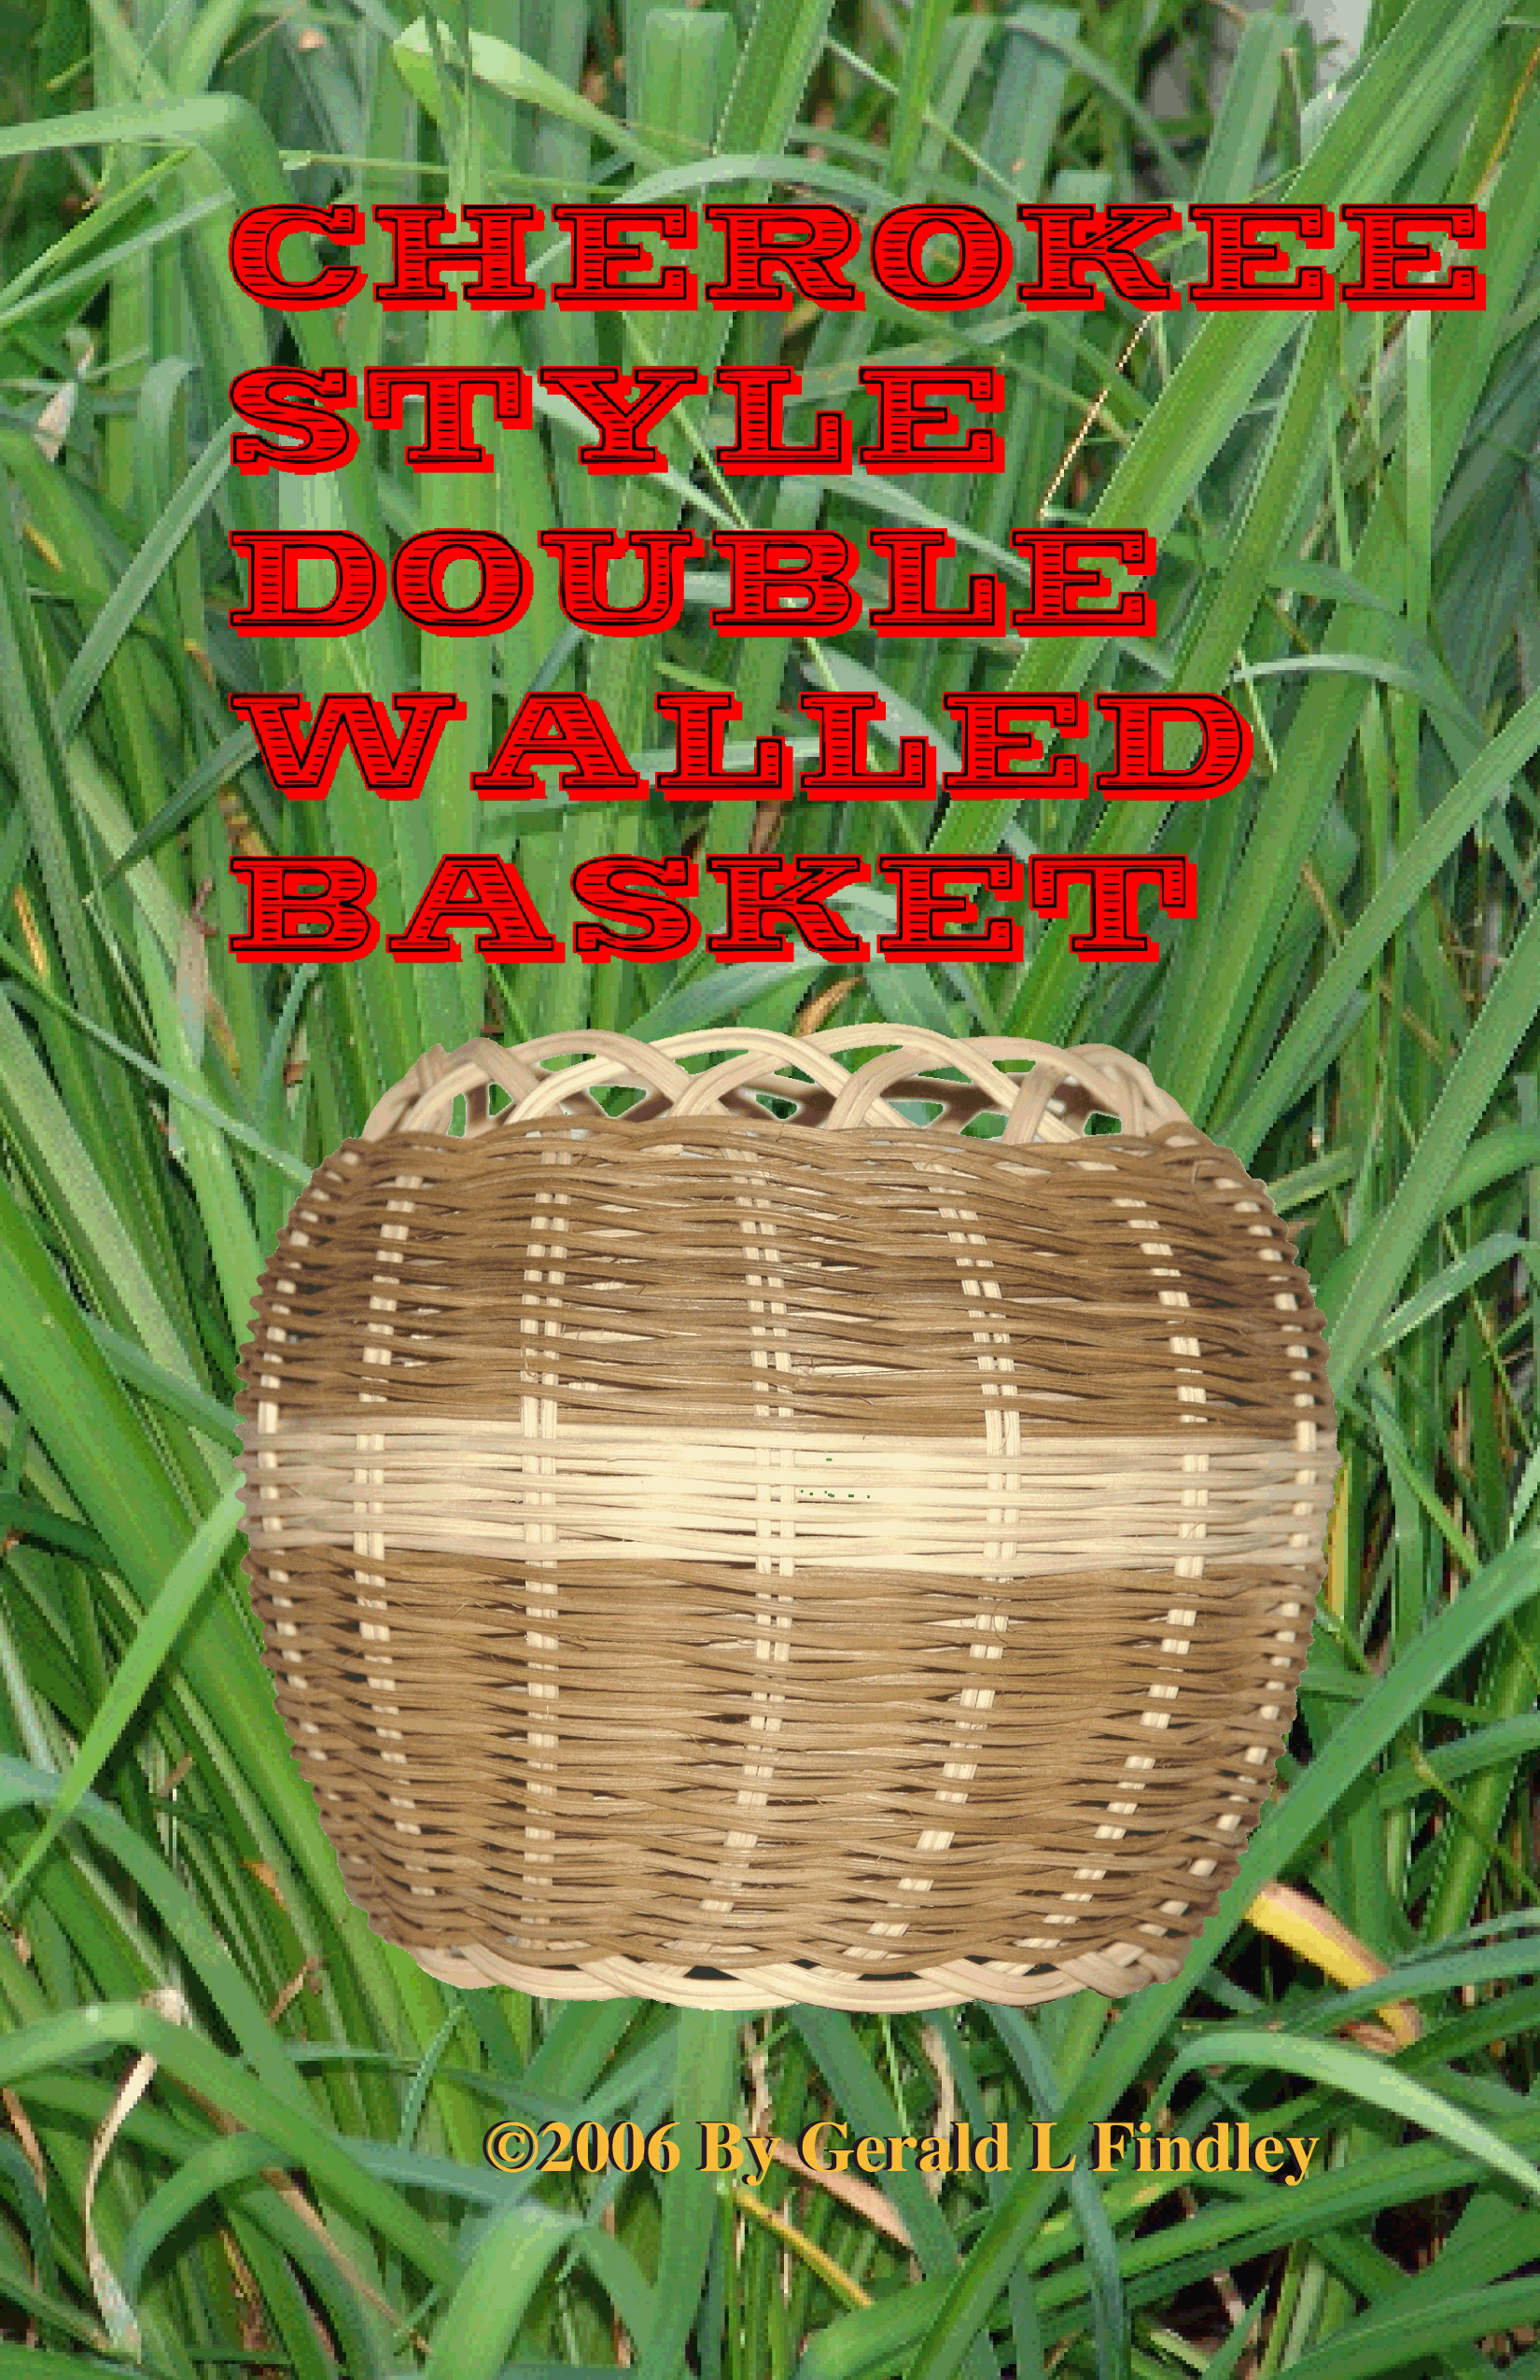 basket,cherokee,double,wall,style